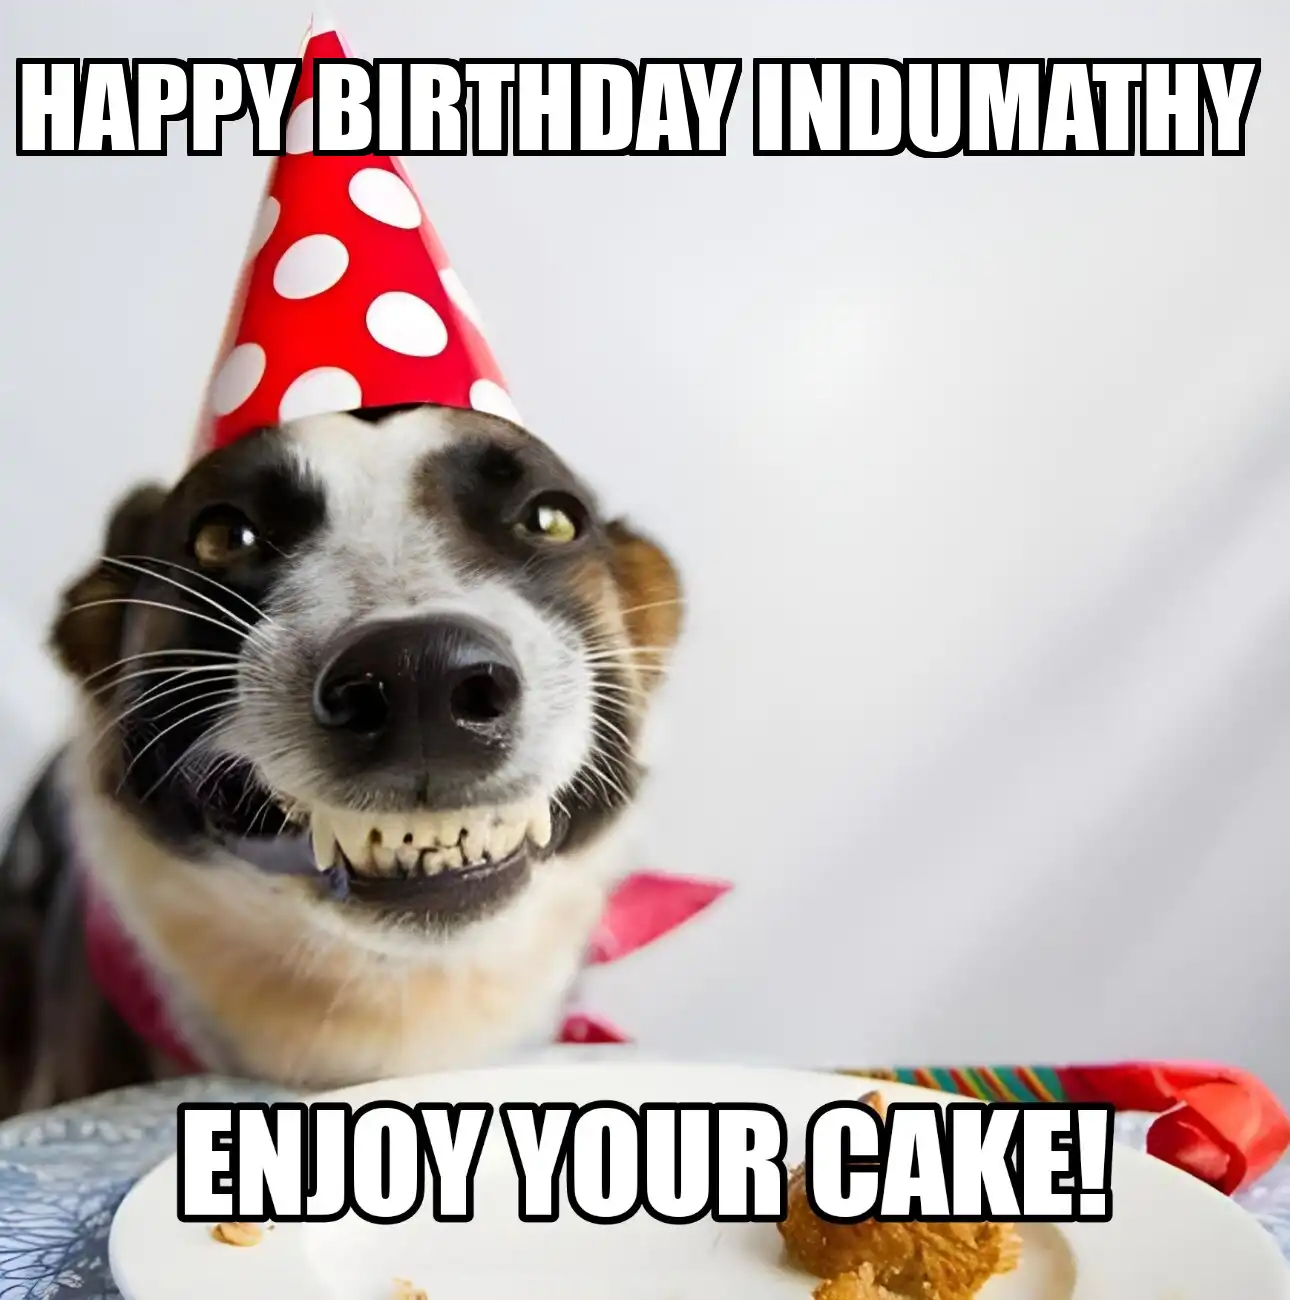 Happy Birthday Indumathy Enjoy Your Cake Dog Meme